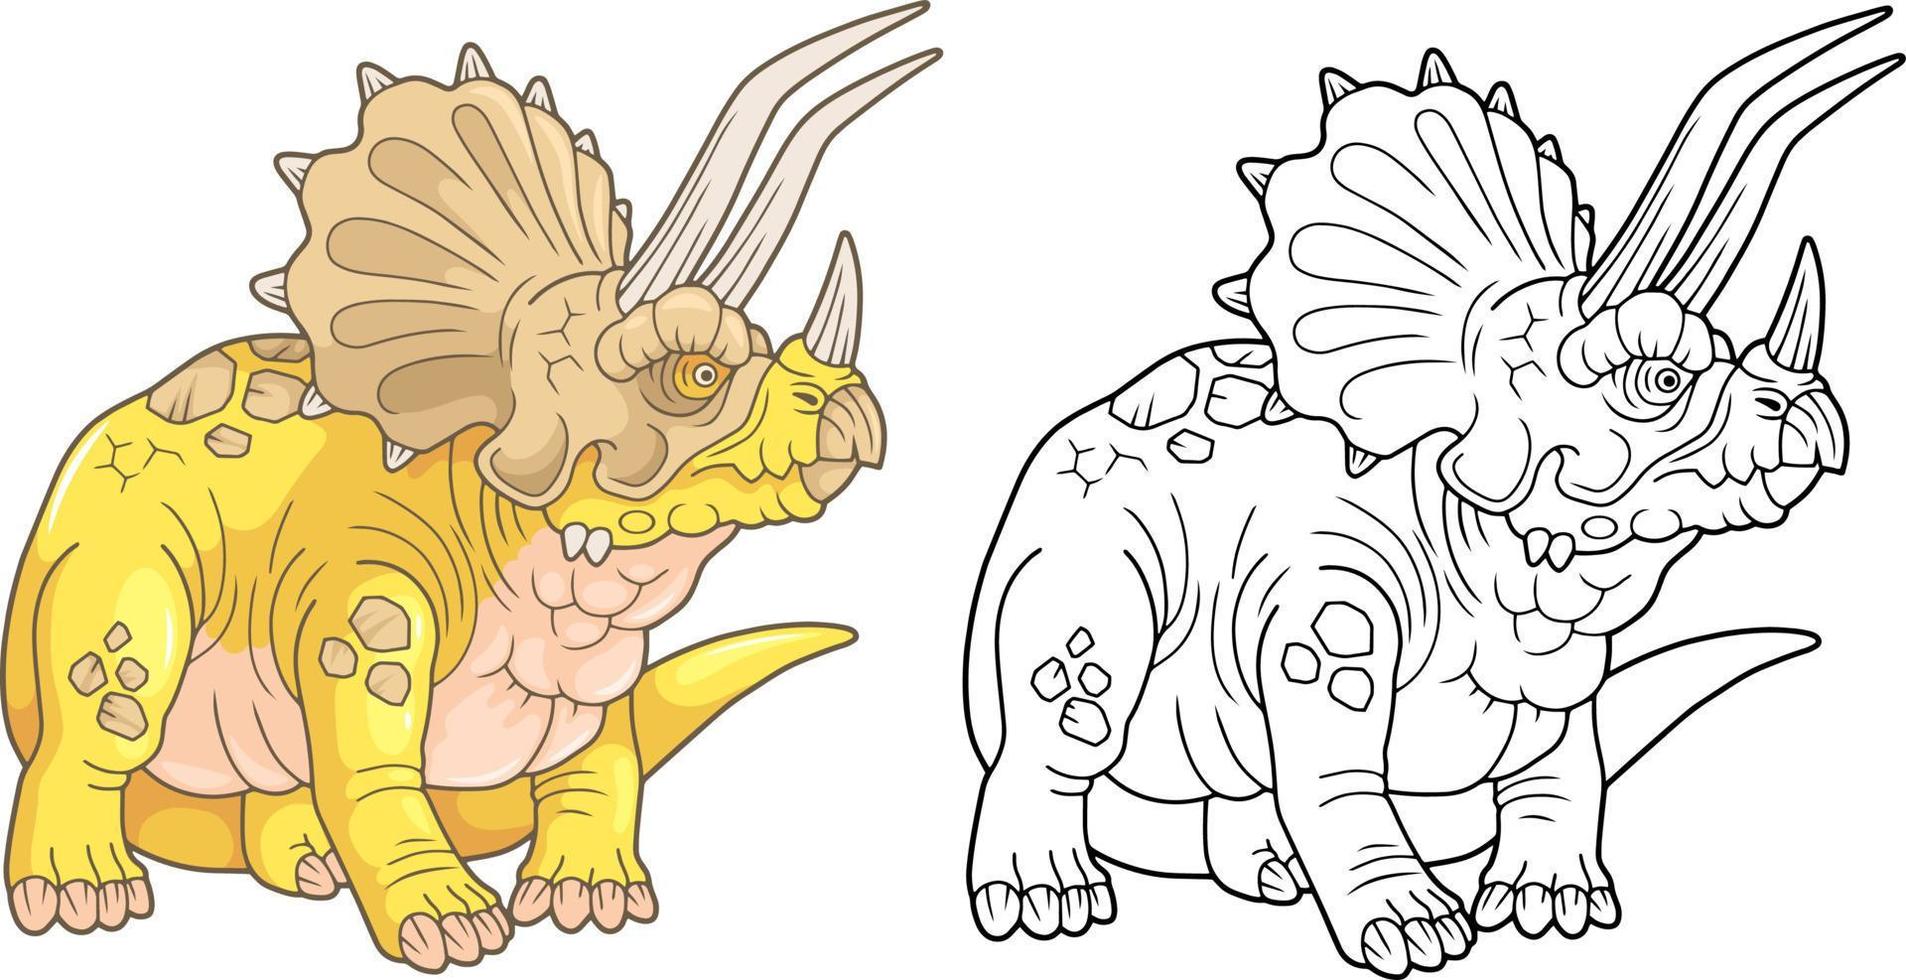 prähistorischer dinosaurier triceratops, illustrationsdesign vektor